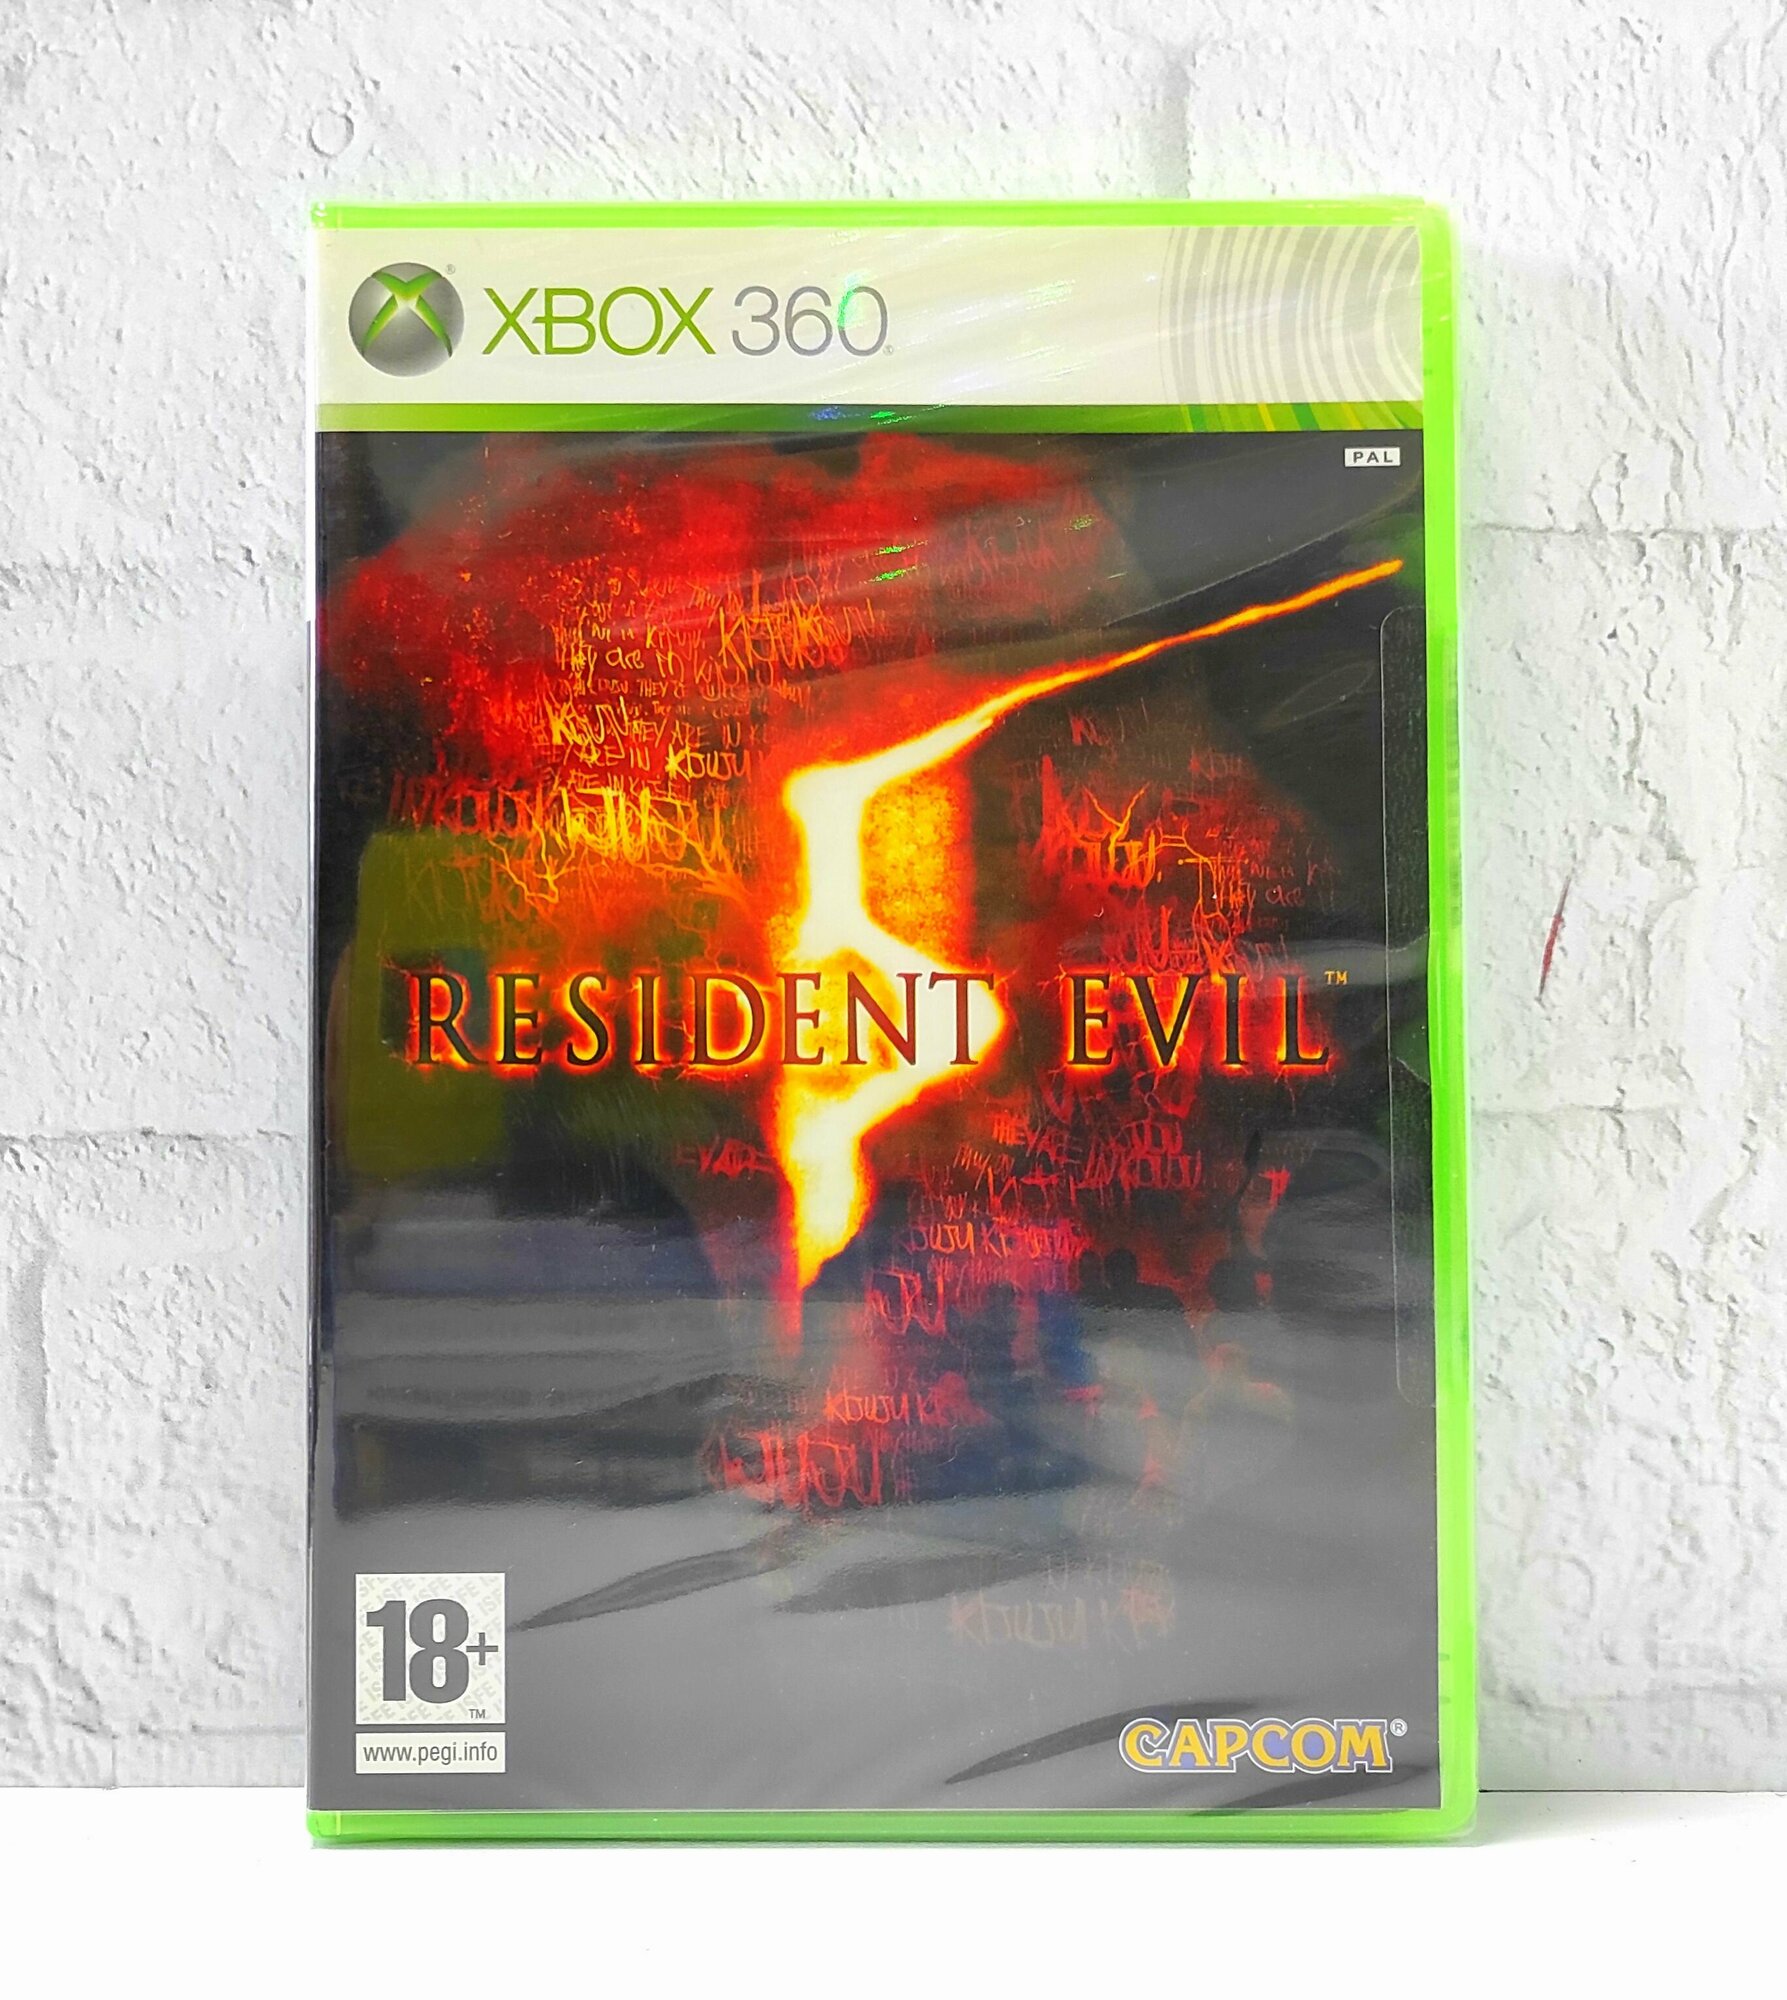 Resident Evil 5 Видеоигра на диске Xbox 360